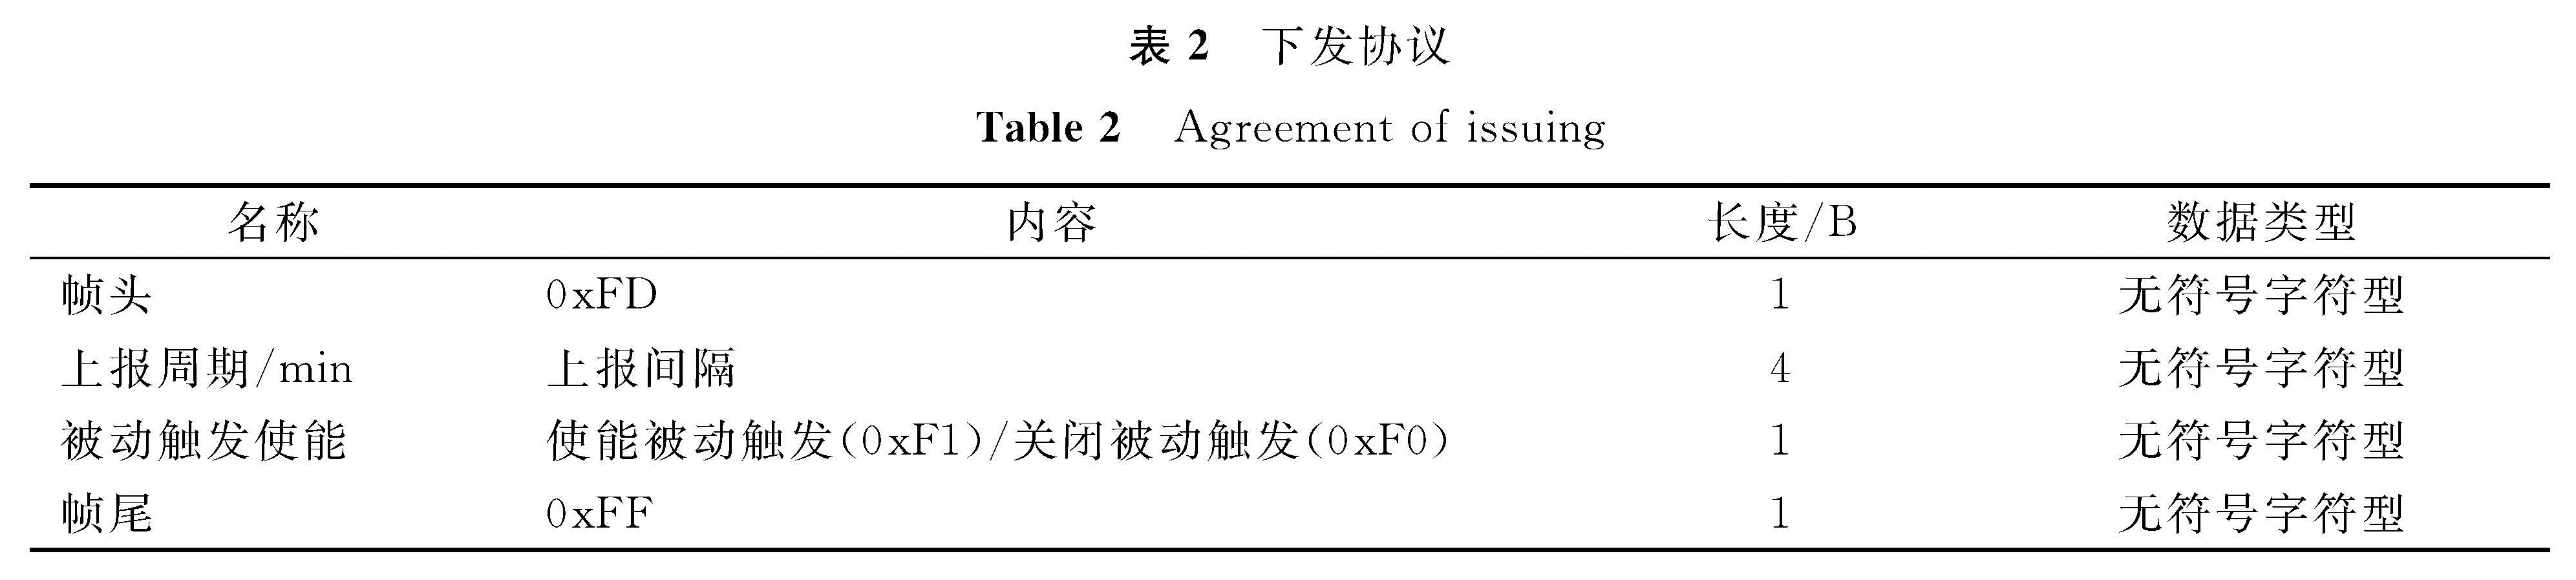 表2 下发协议<br/>Table 2 Agreement of issuing